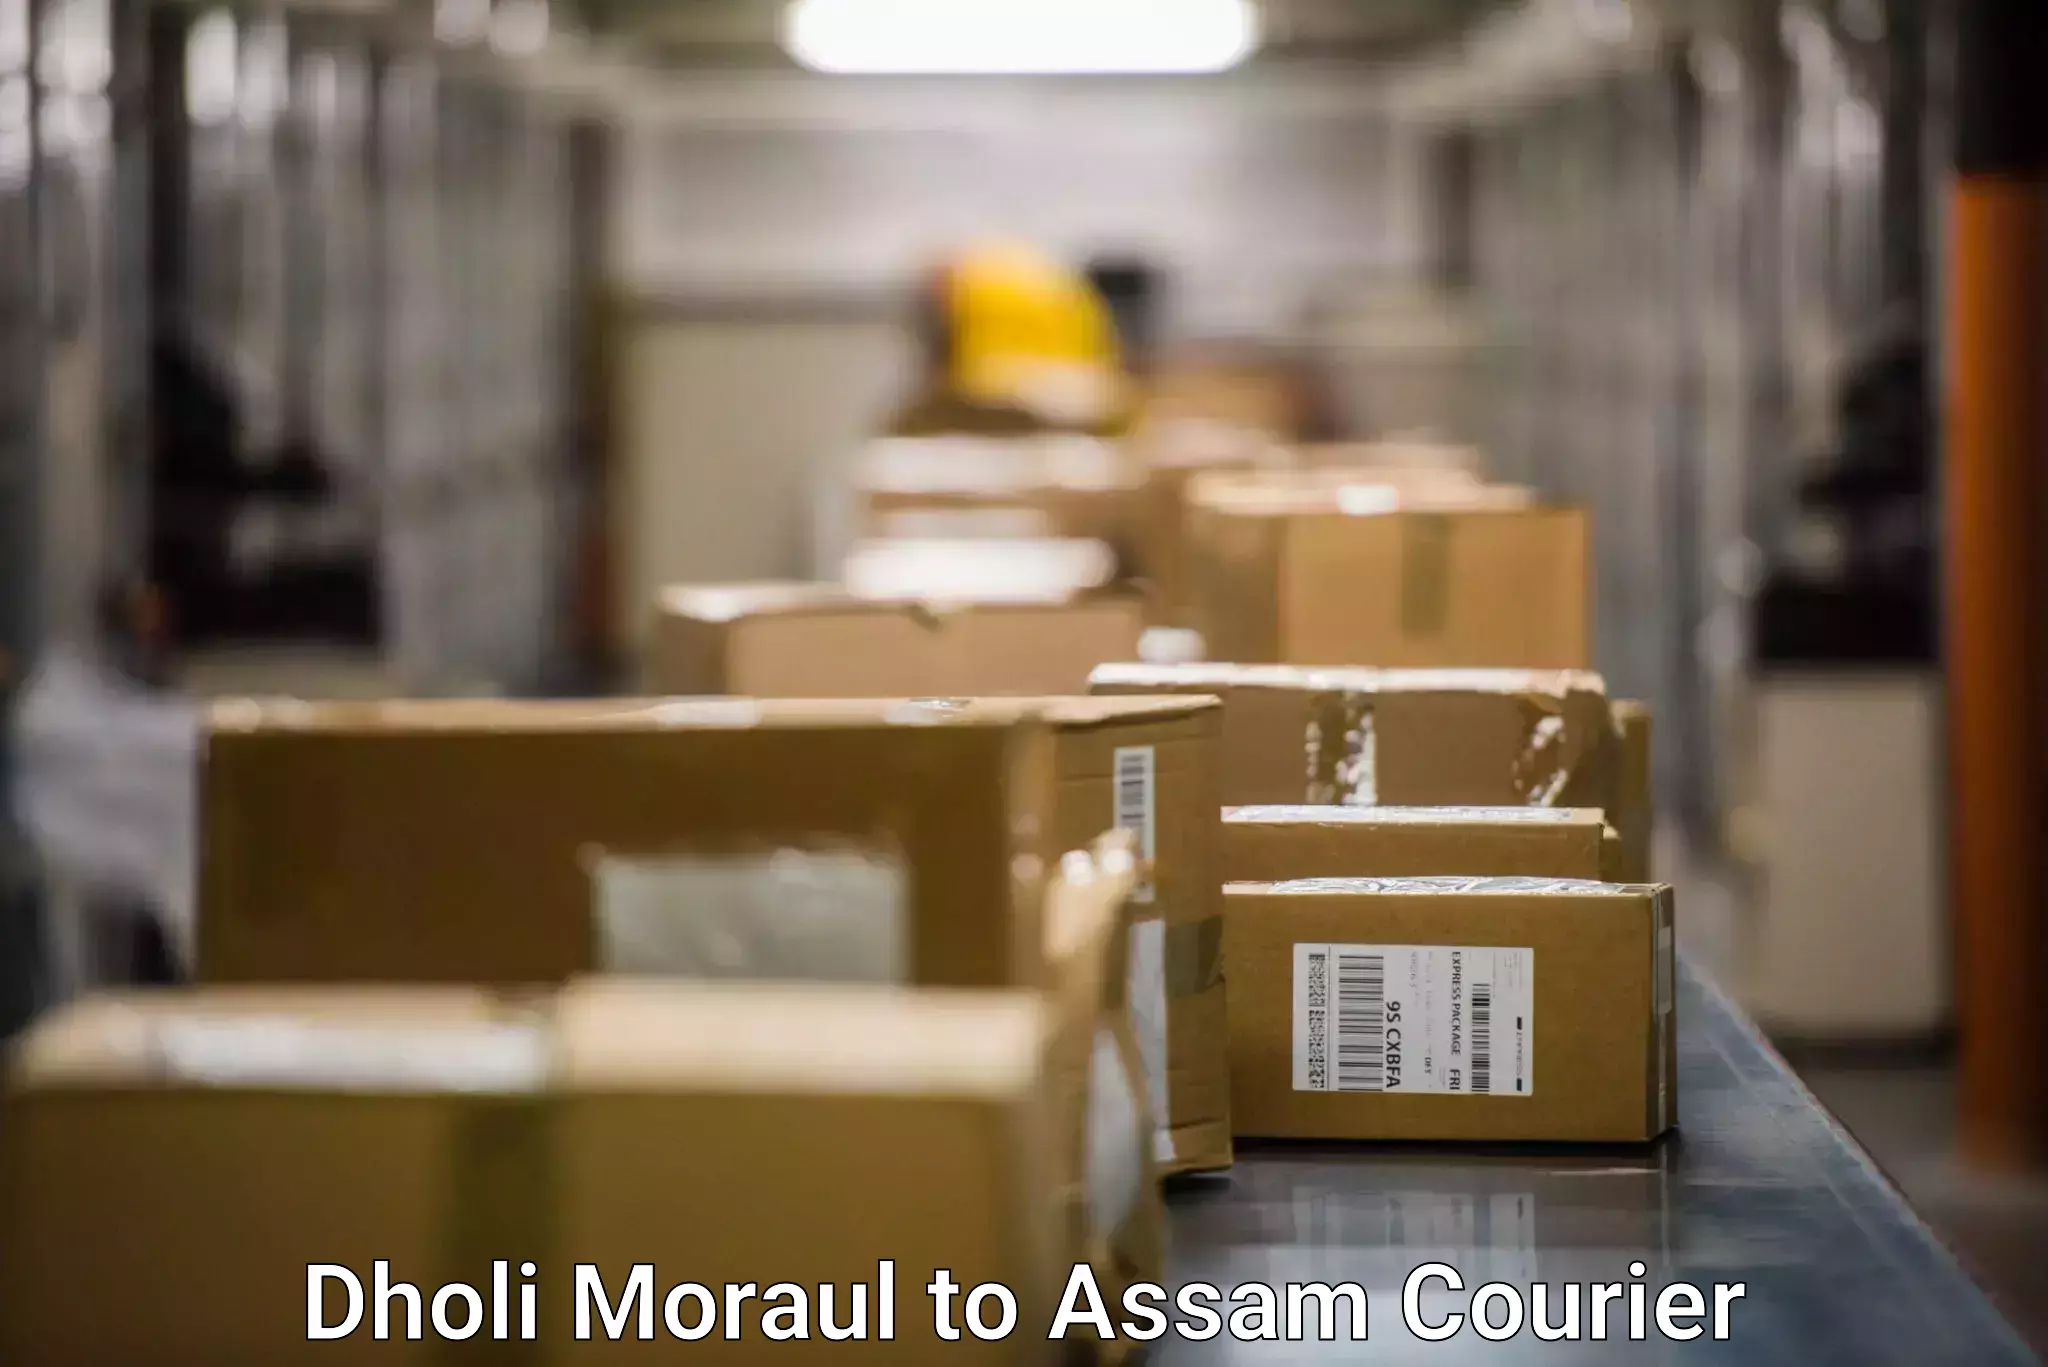 Comprehensive freight services Dholi Moraul to Dhakuakhana